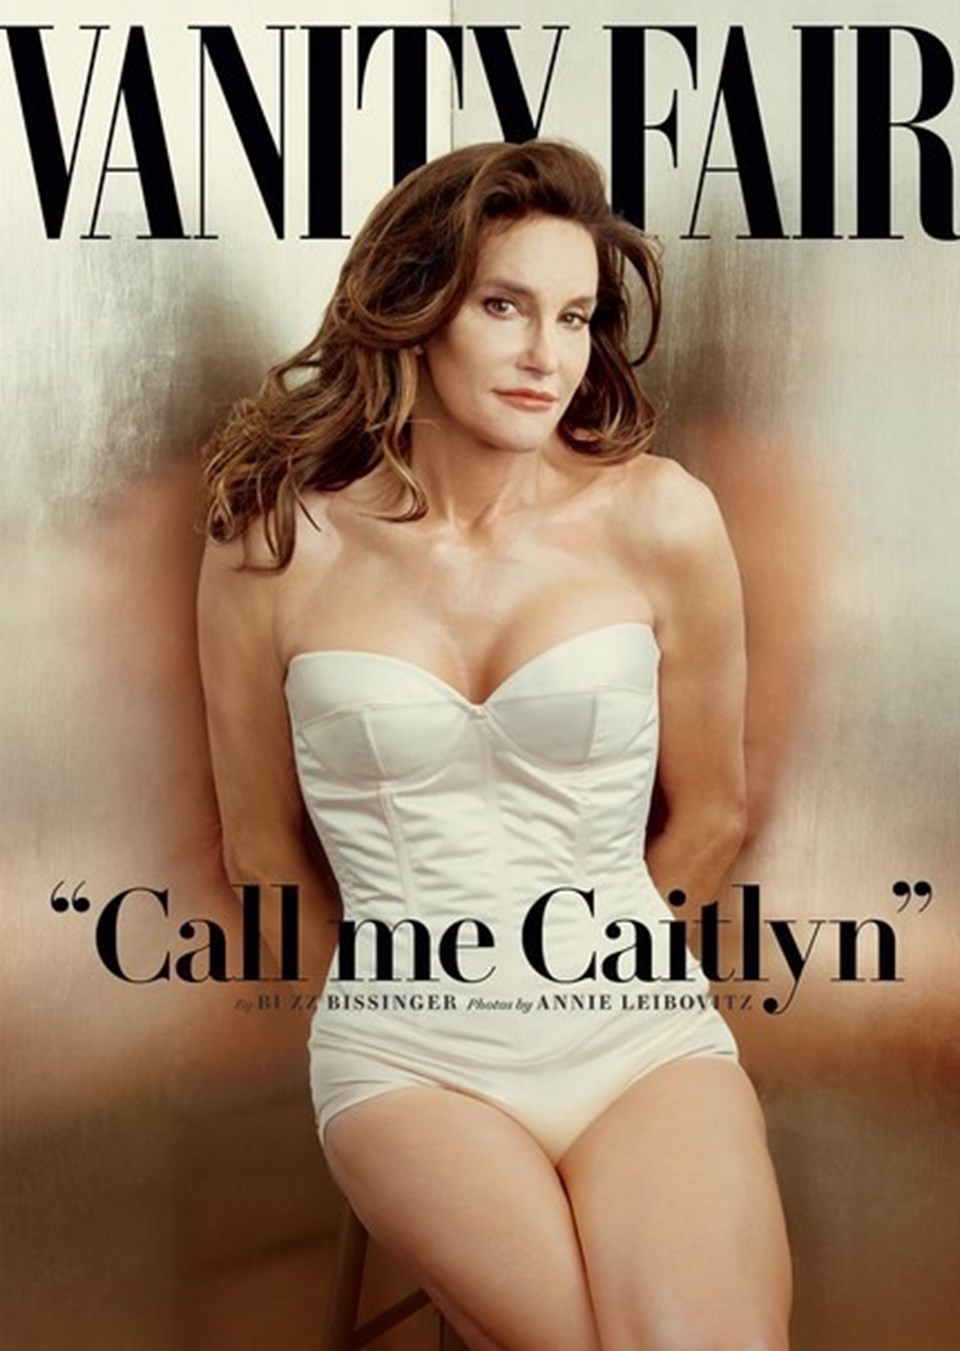 Altın madalya sahibi atlet Bruce Jenner 2015 yılında cinsiyet değiştirerek Caitlyn adını aldı.  Carter, Jenner'ı Vanity Fair'in kapağına taşıdı.
